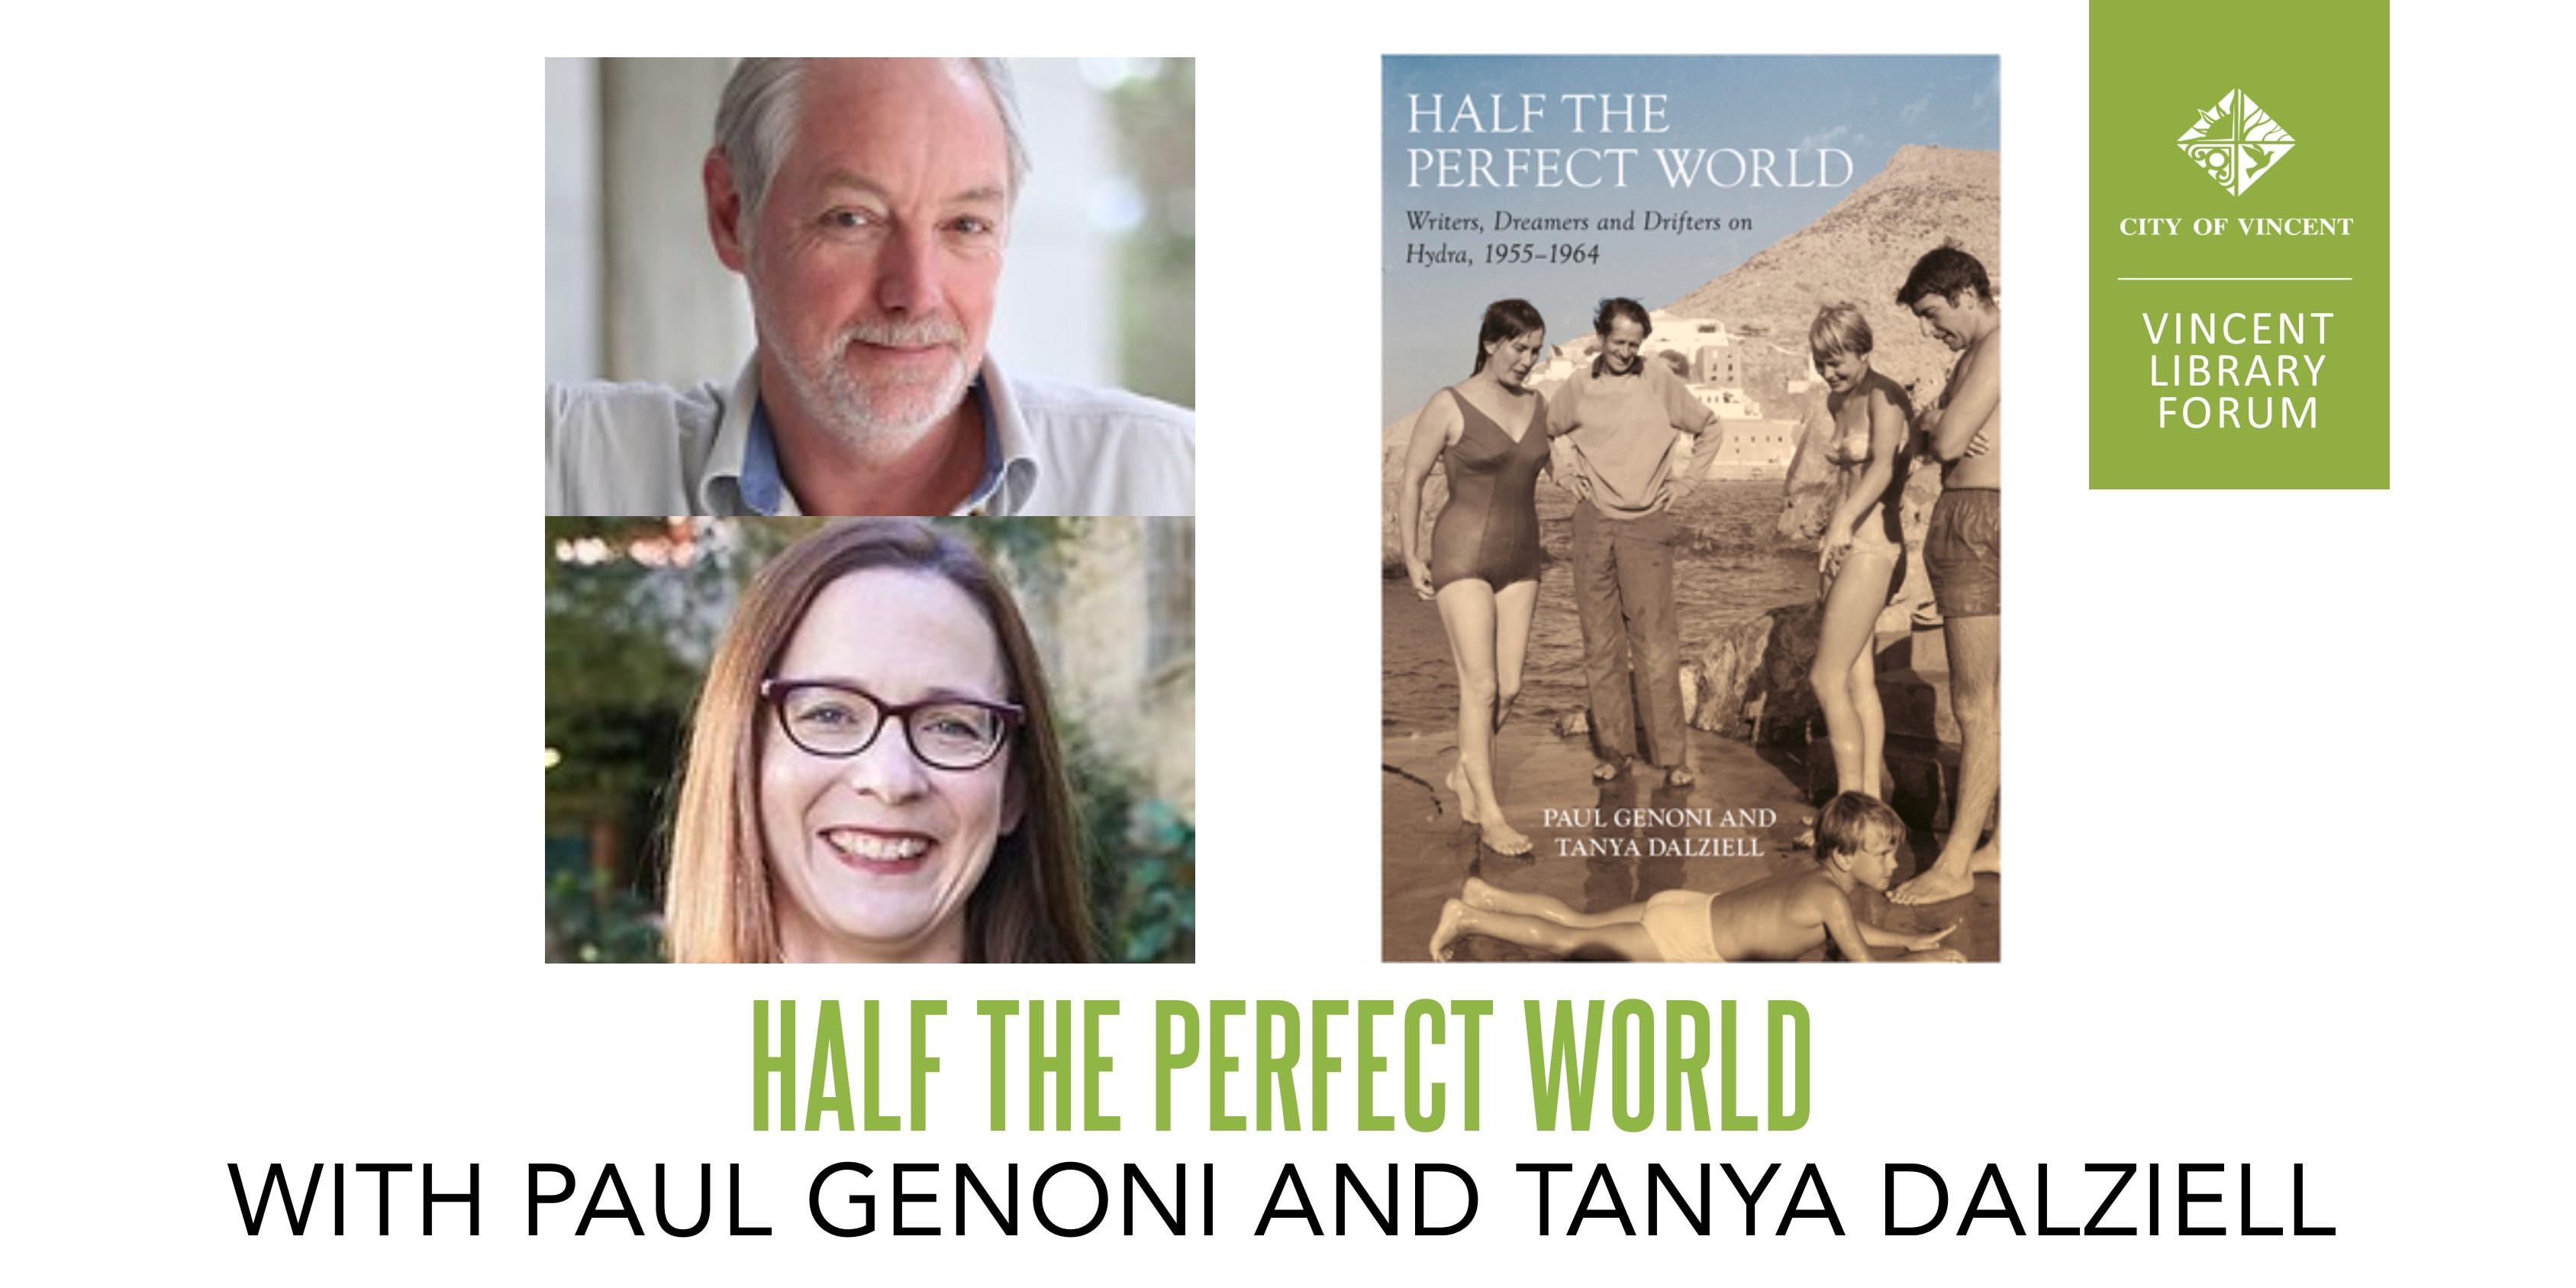 Half The Perfect World with Paul Genoni and Tanya Dalziell